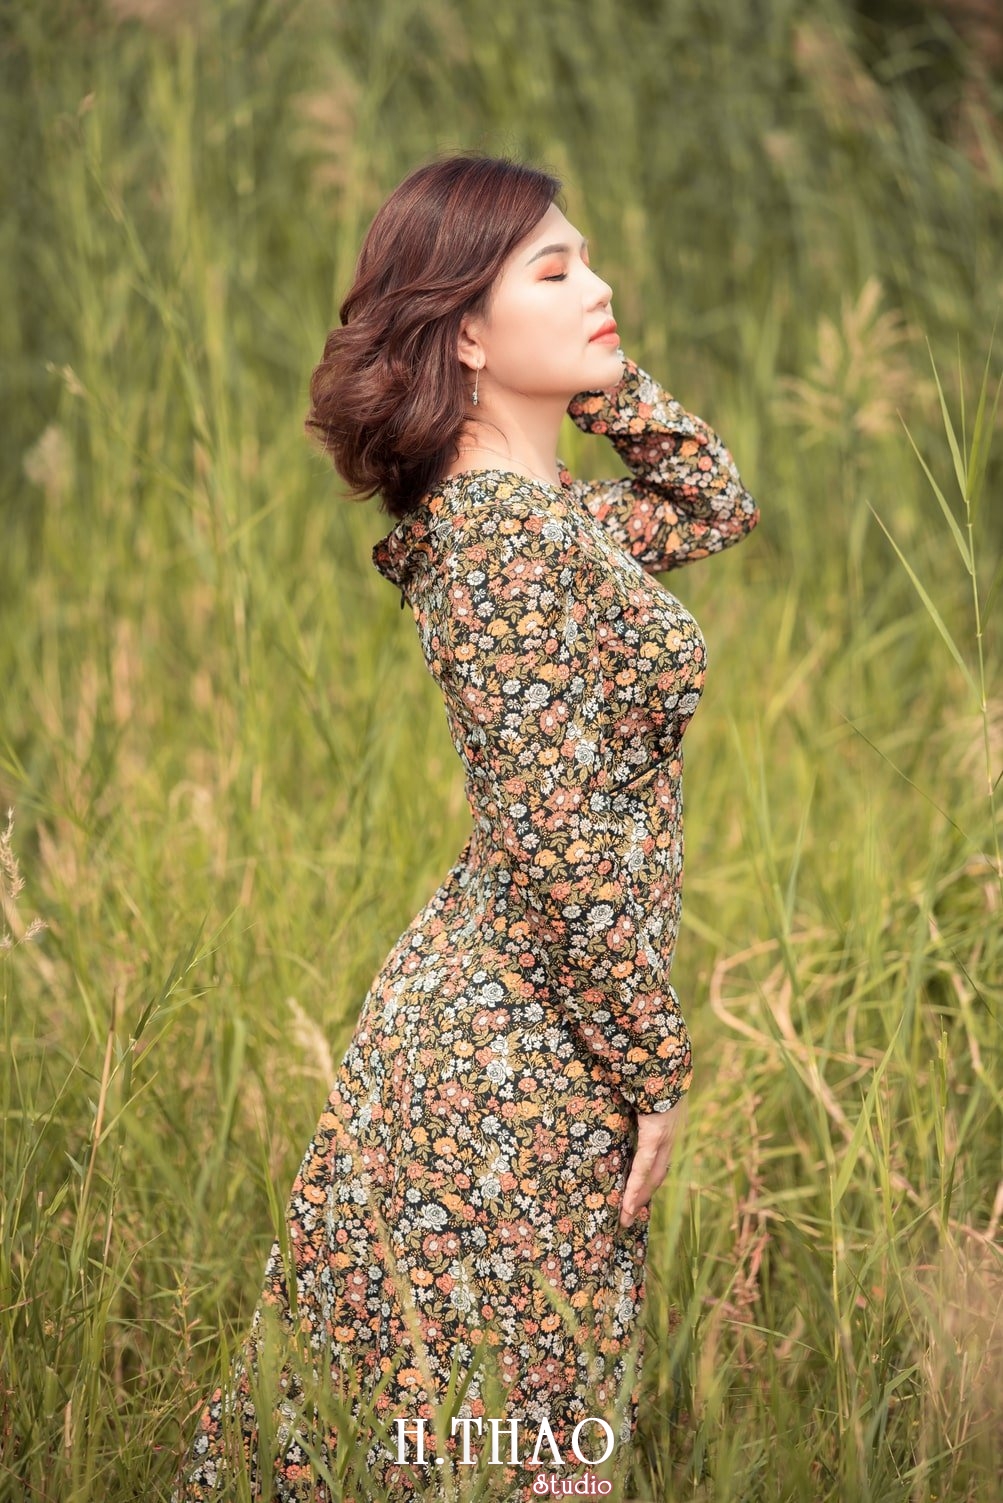 Canh Dong Co Lau 9 - Góc ảnh cỏ lau quận 2 tuyệt đẹp với nắng chiều - HThao Studio